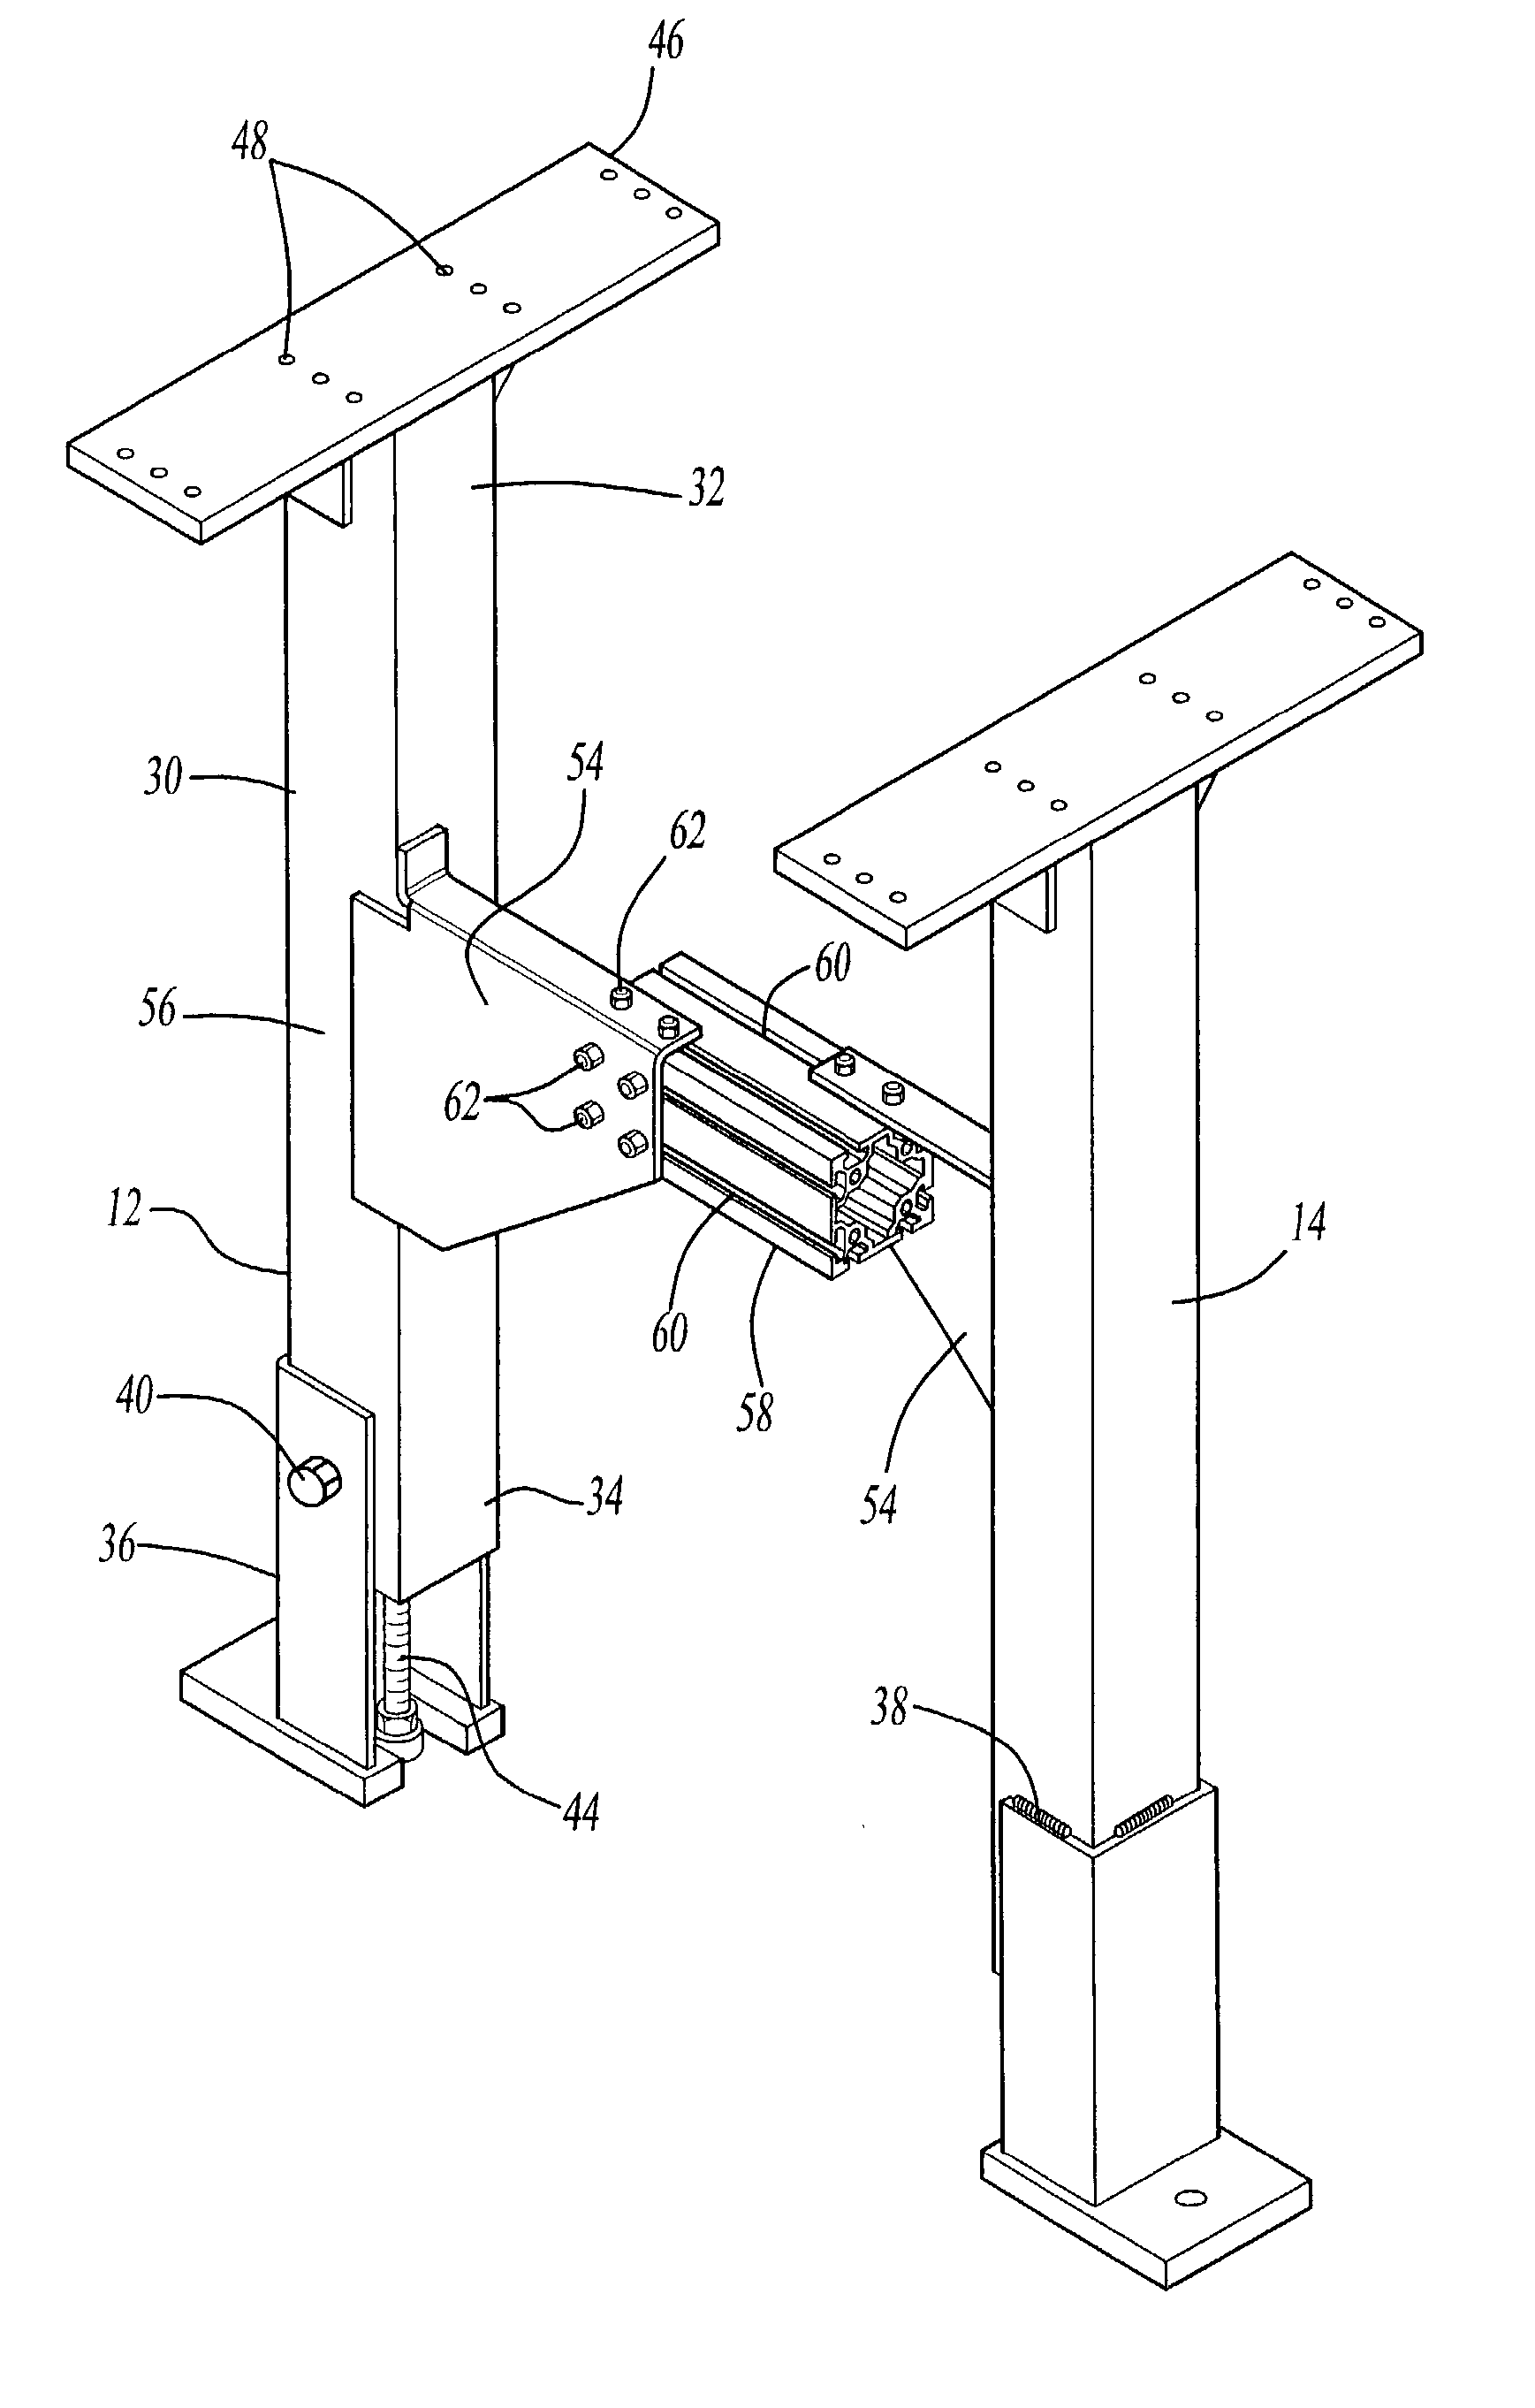 Modular roller conveyor system